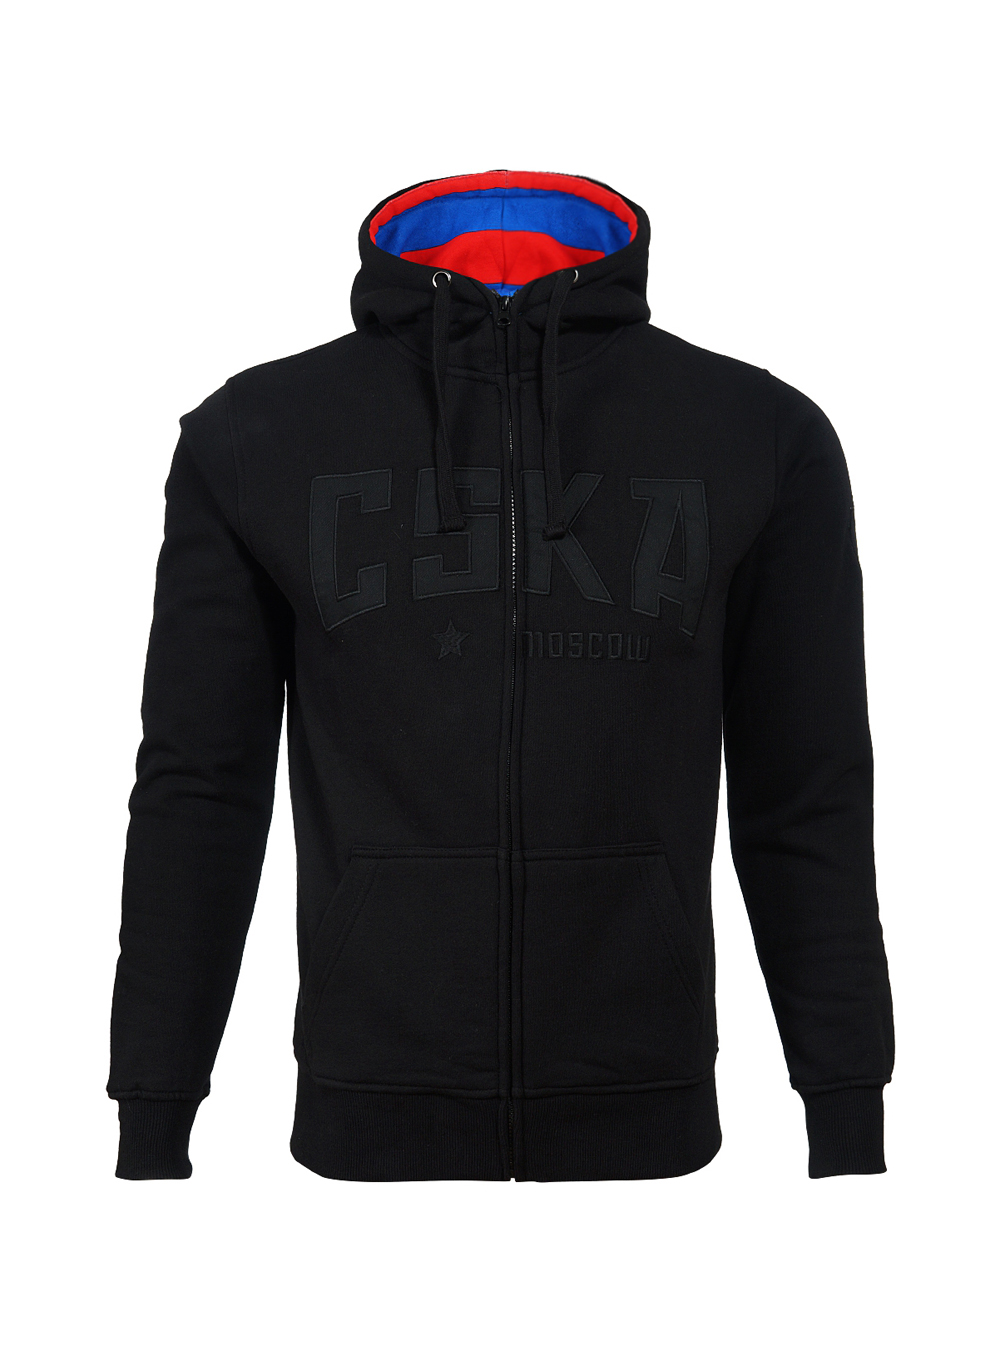 Толстовка на молнии с капюшоном "CSKA", цвет черный (XL) от Cskashop